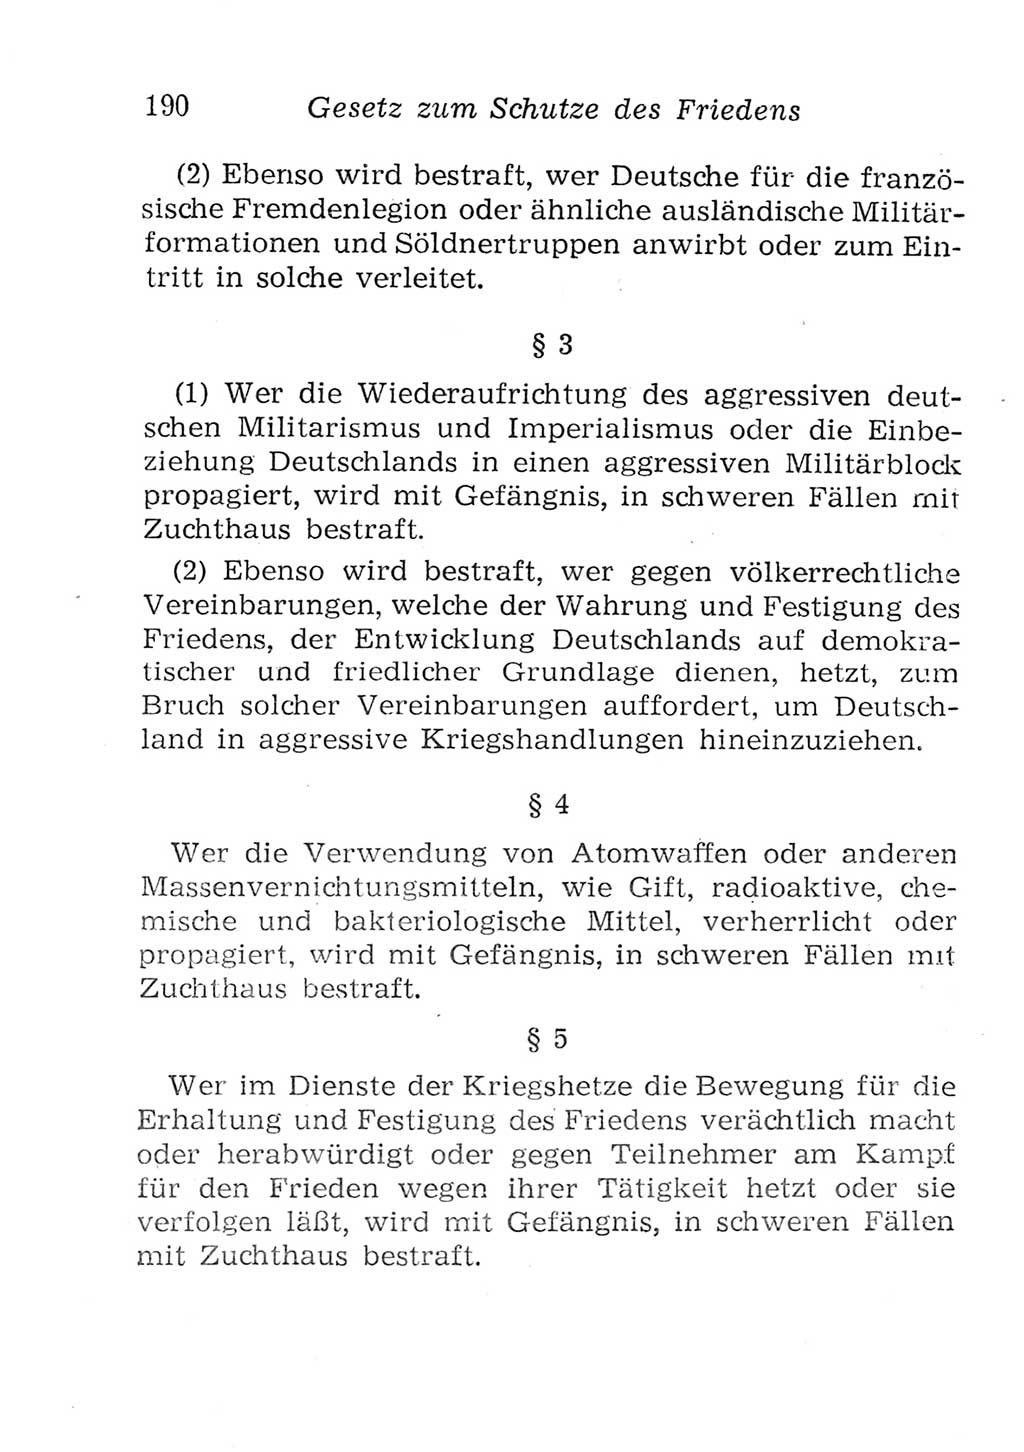 Strafgesetzbuch (StGB) und andere Strafgesetze [Deutsche Demokratische Republik (DDR)] 1957, Seite 190 (StGB Strafges. DDR 1957, S. 190)